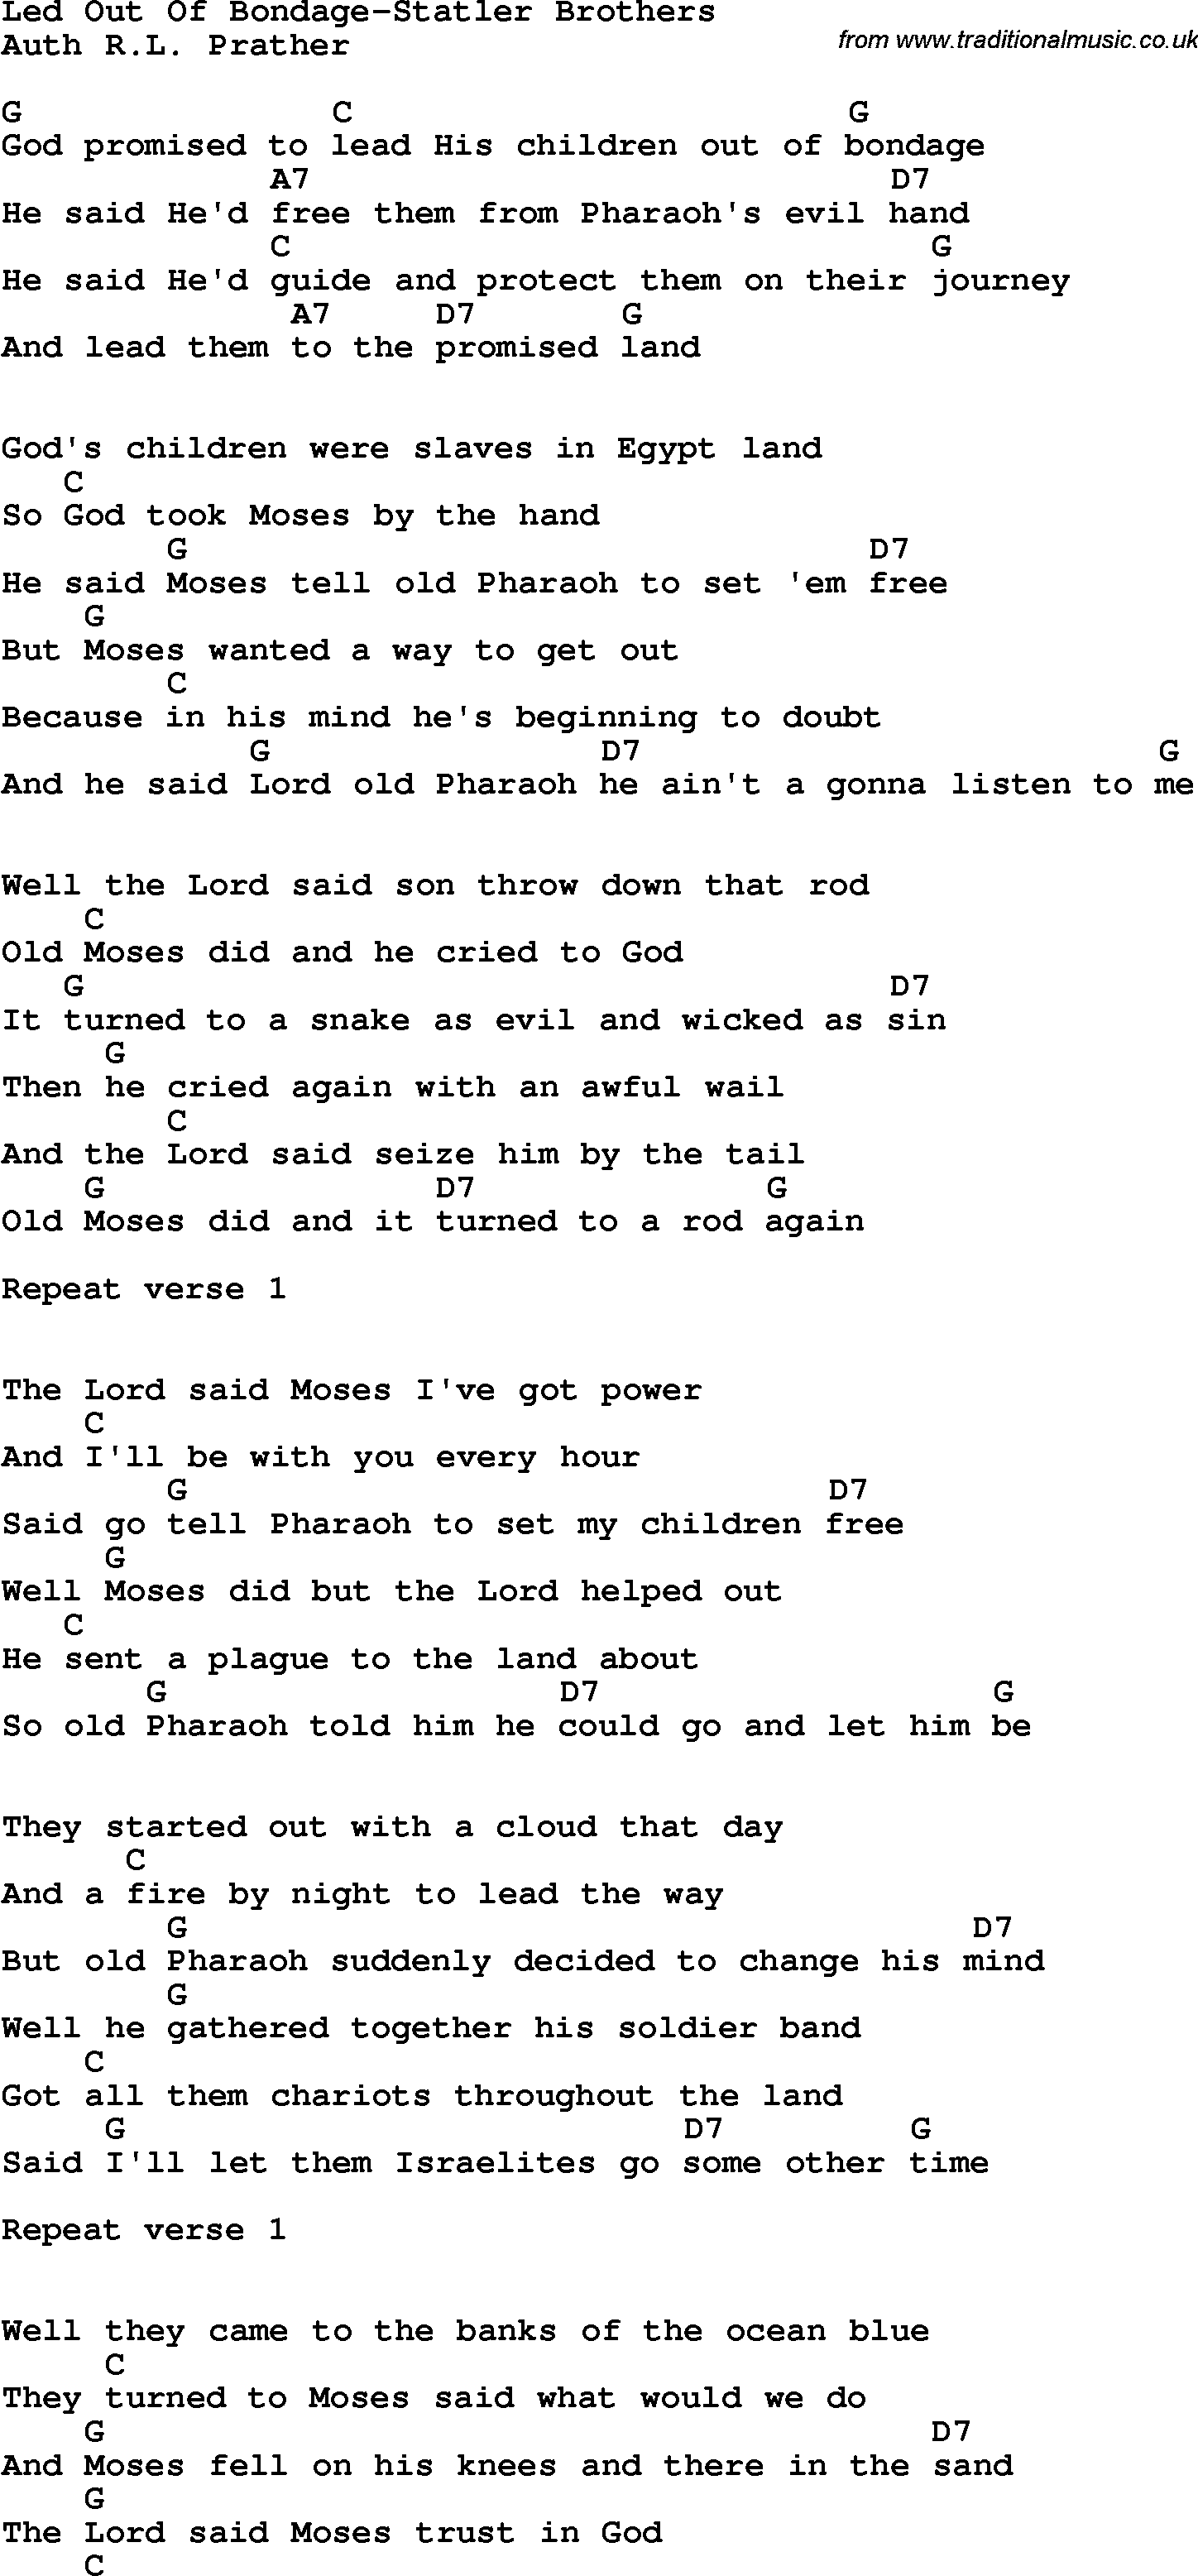 Lyrics led out of bondage